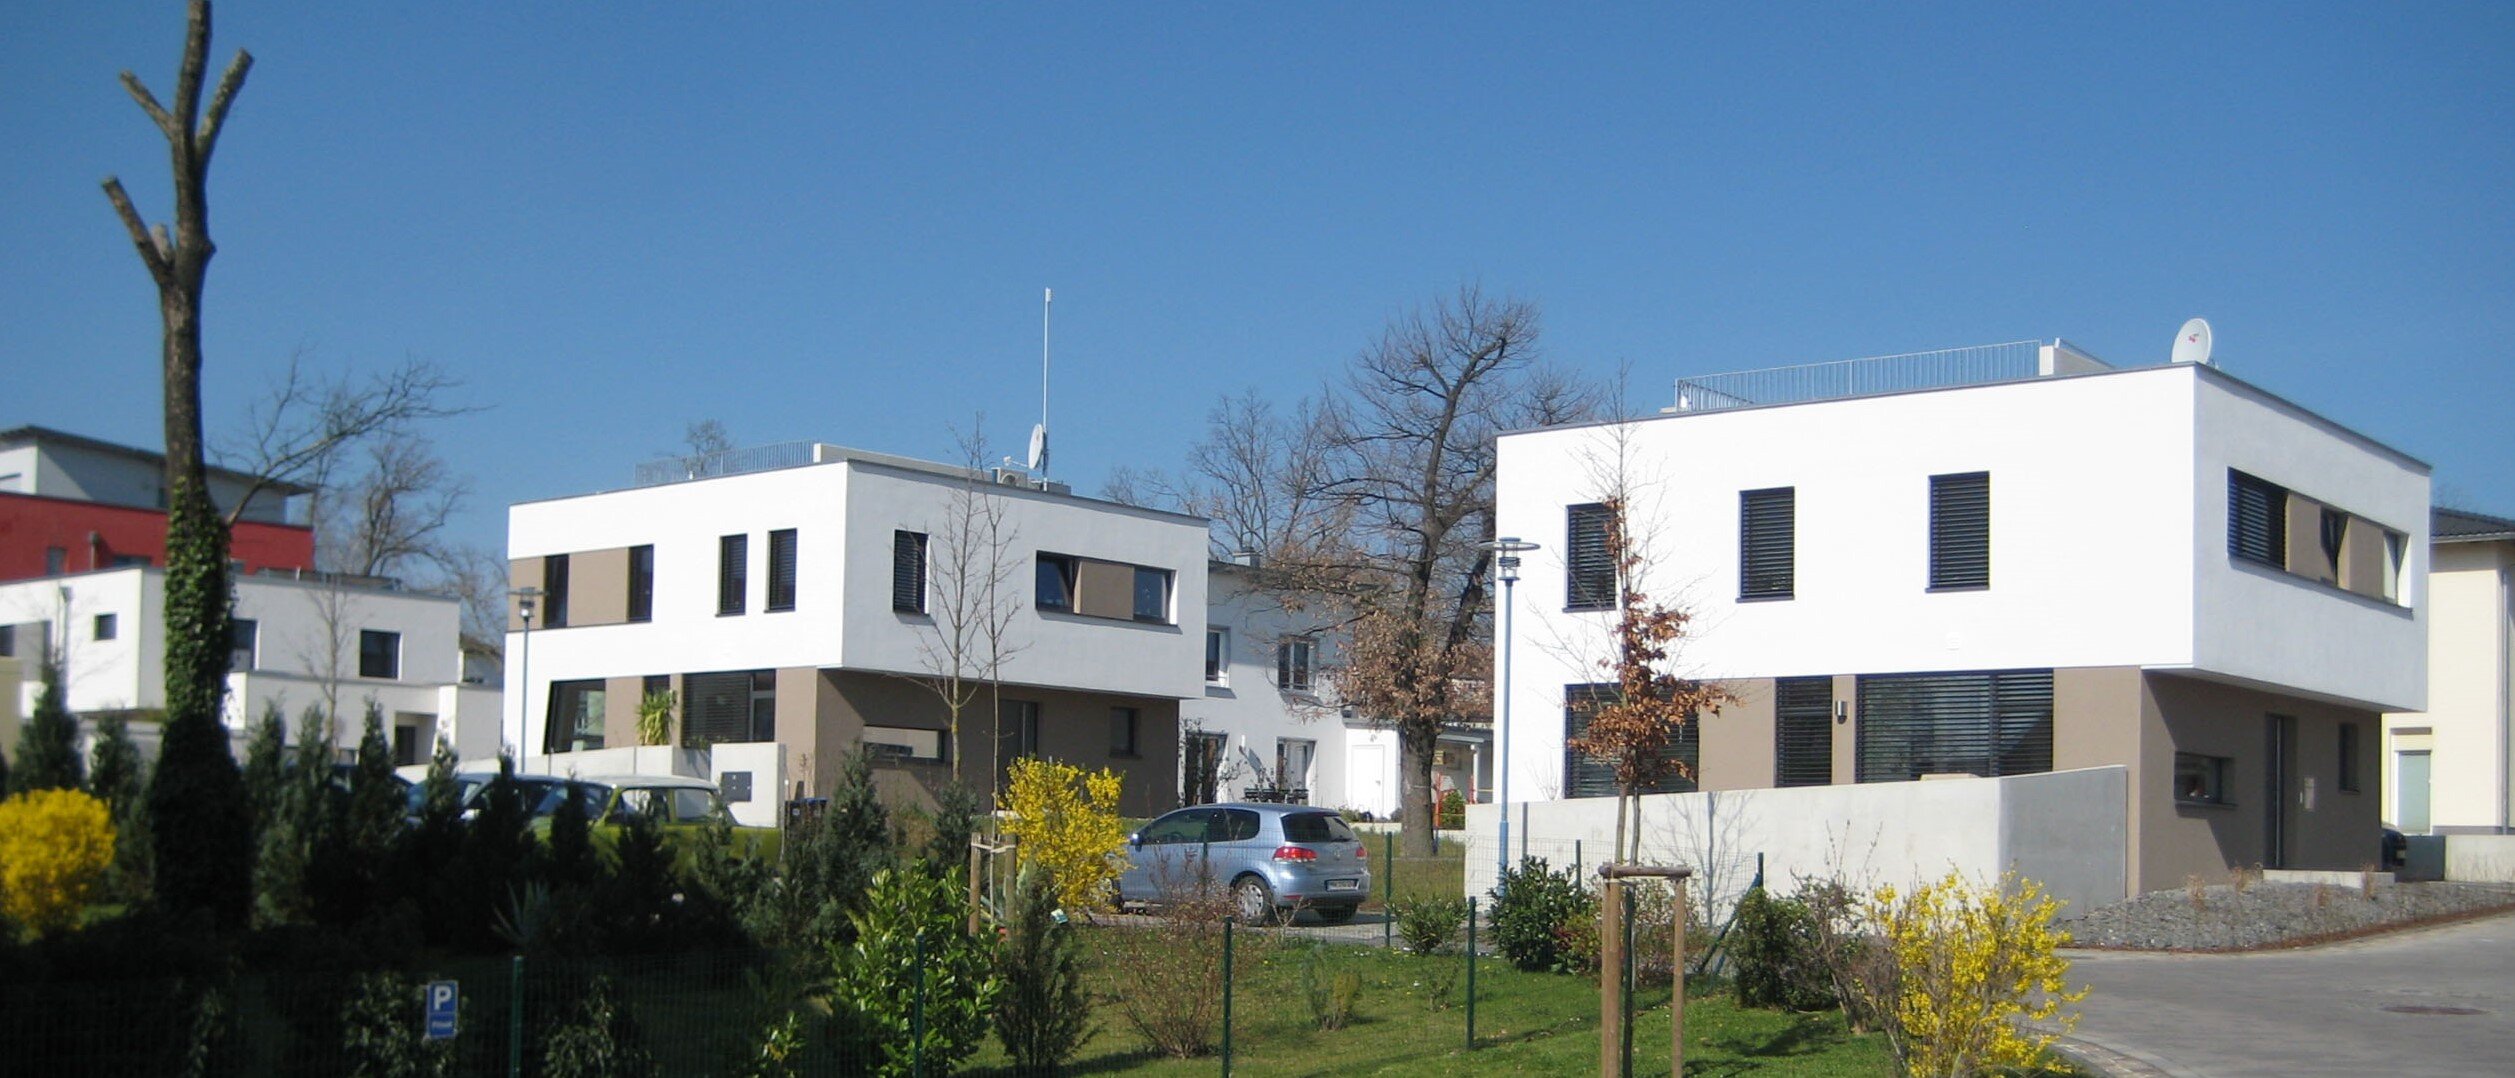 Symbolbild mit Einfamilienhäusern in Heide-Süd